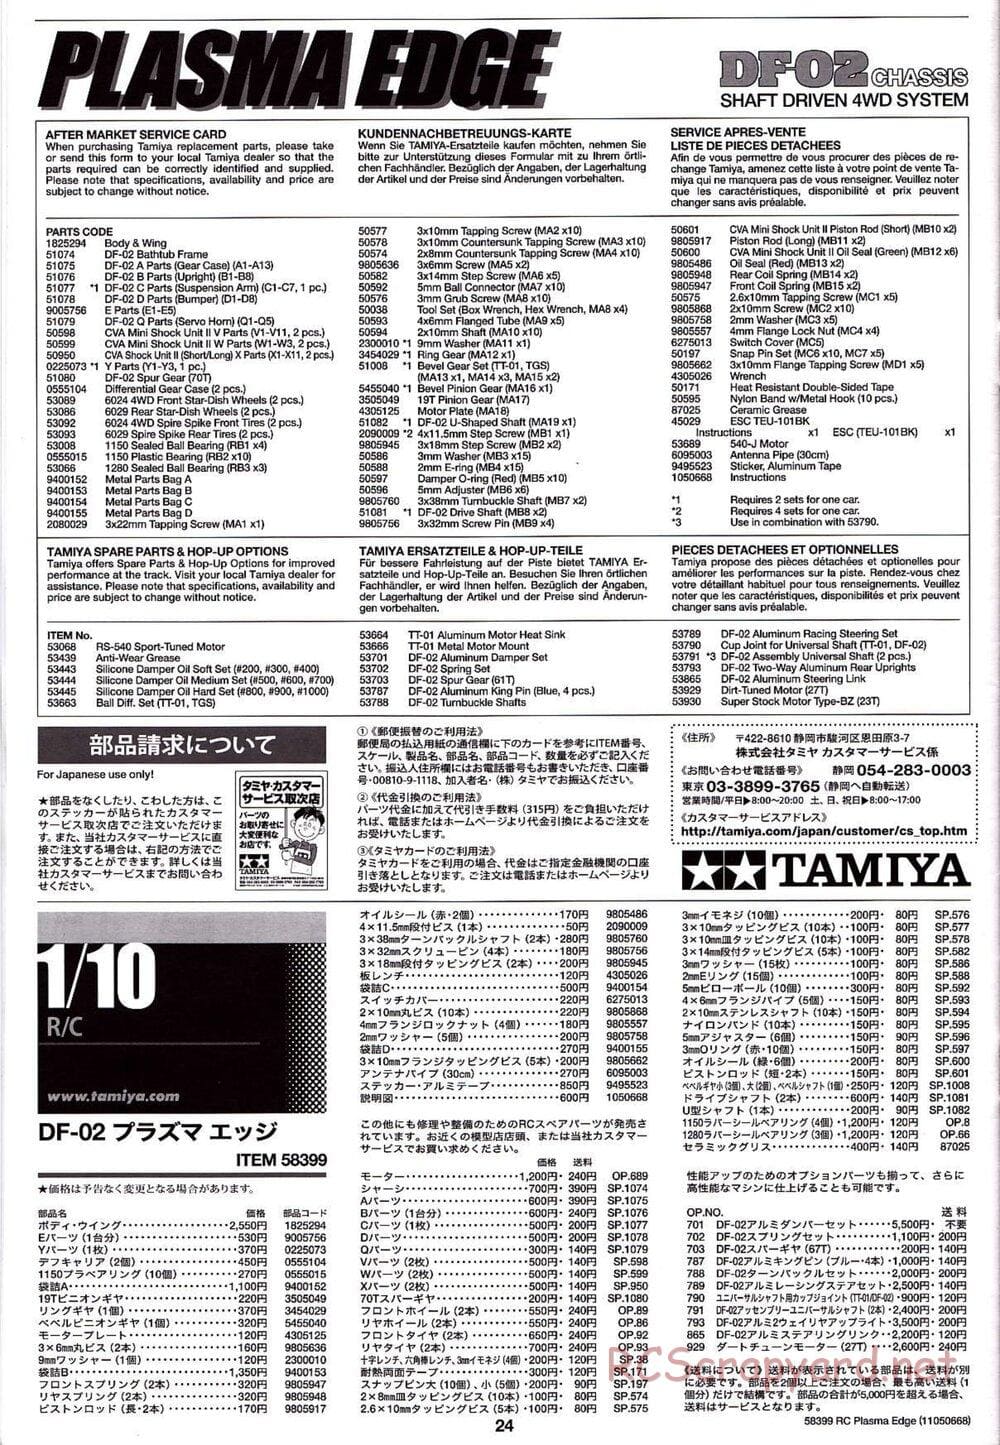 Tamiya - Plasma Edge Chassis - Manual - Page 24